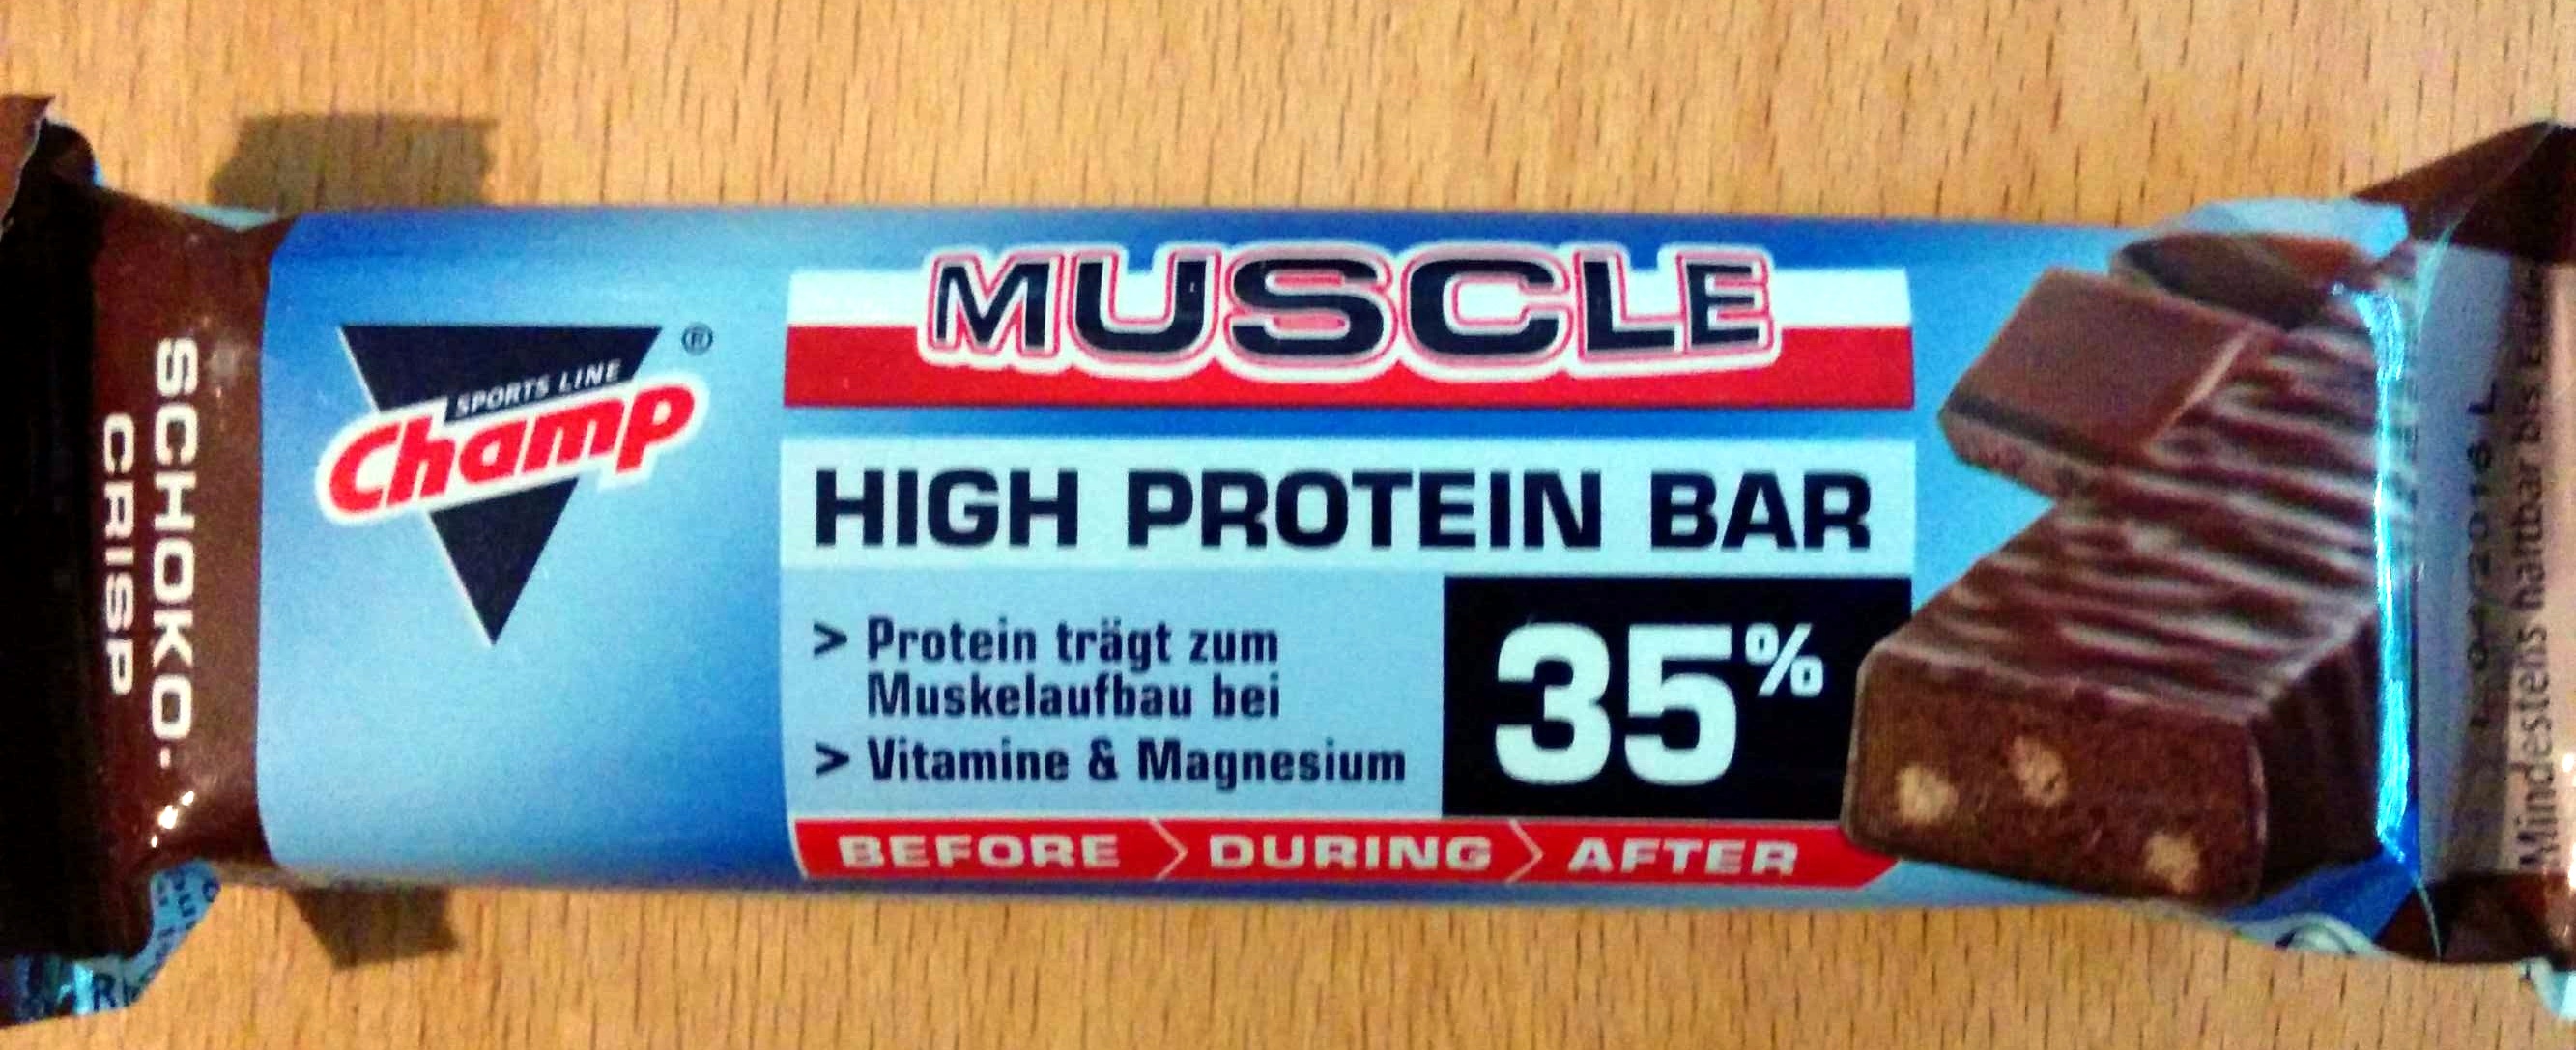 Muscle High Protein Bar 35% - Produkt - de